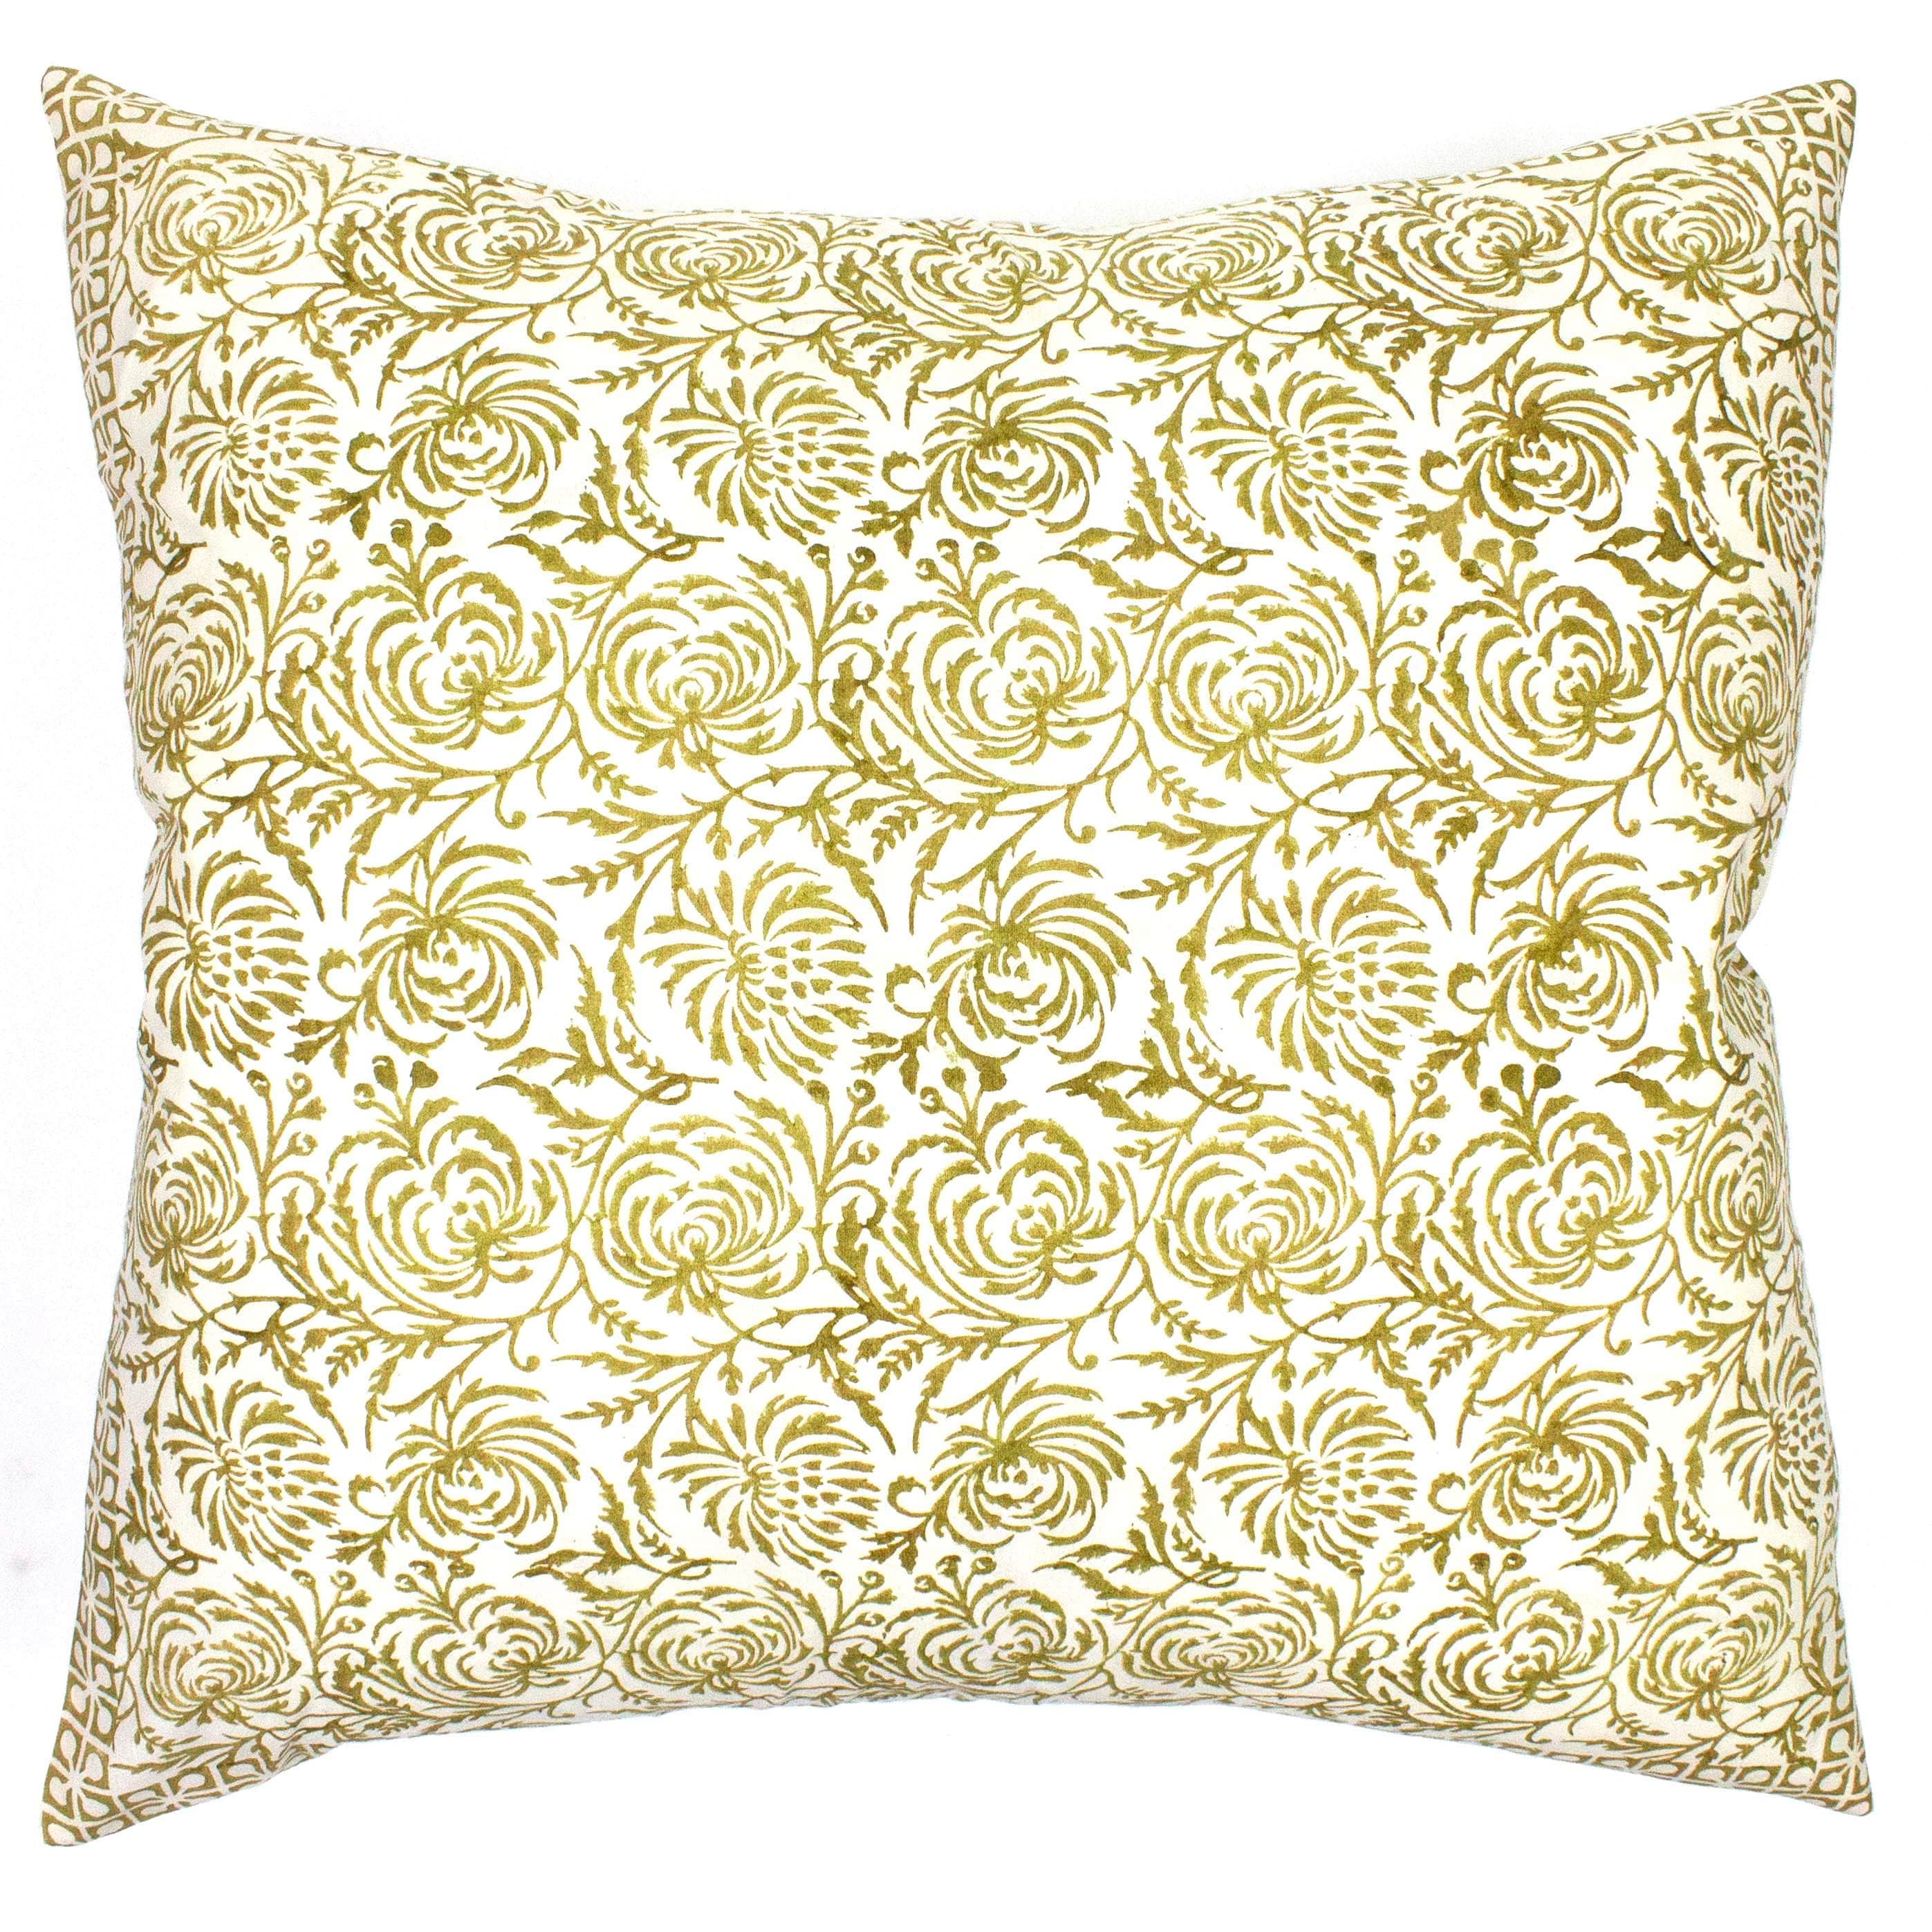 Large Decorative Throw Pillows, Bohemian Decorative Sofa Pillows